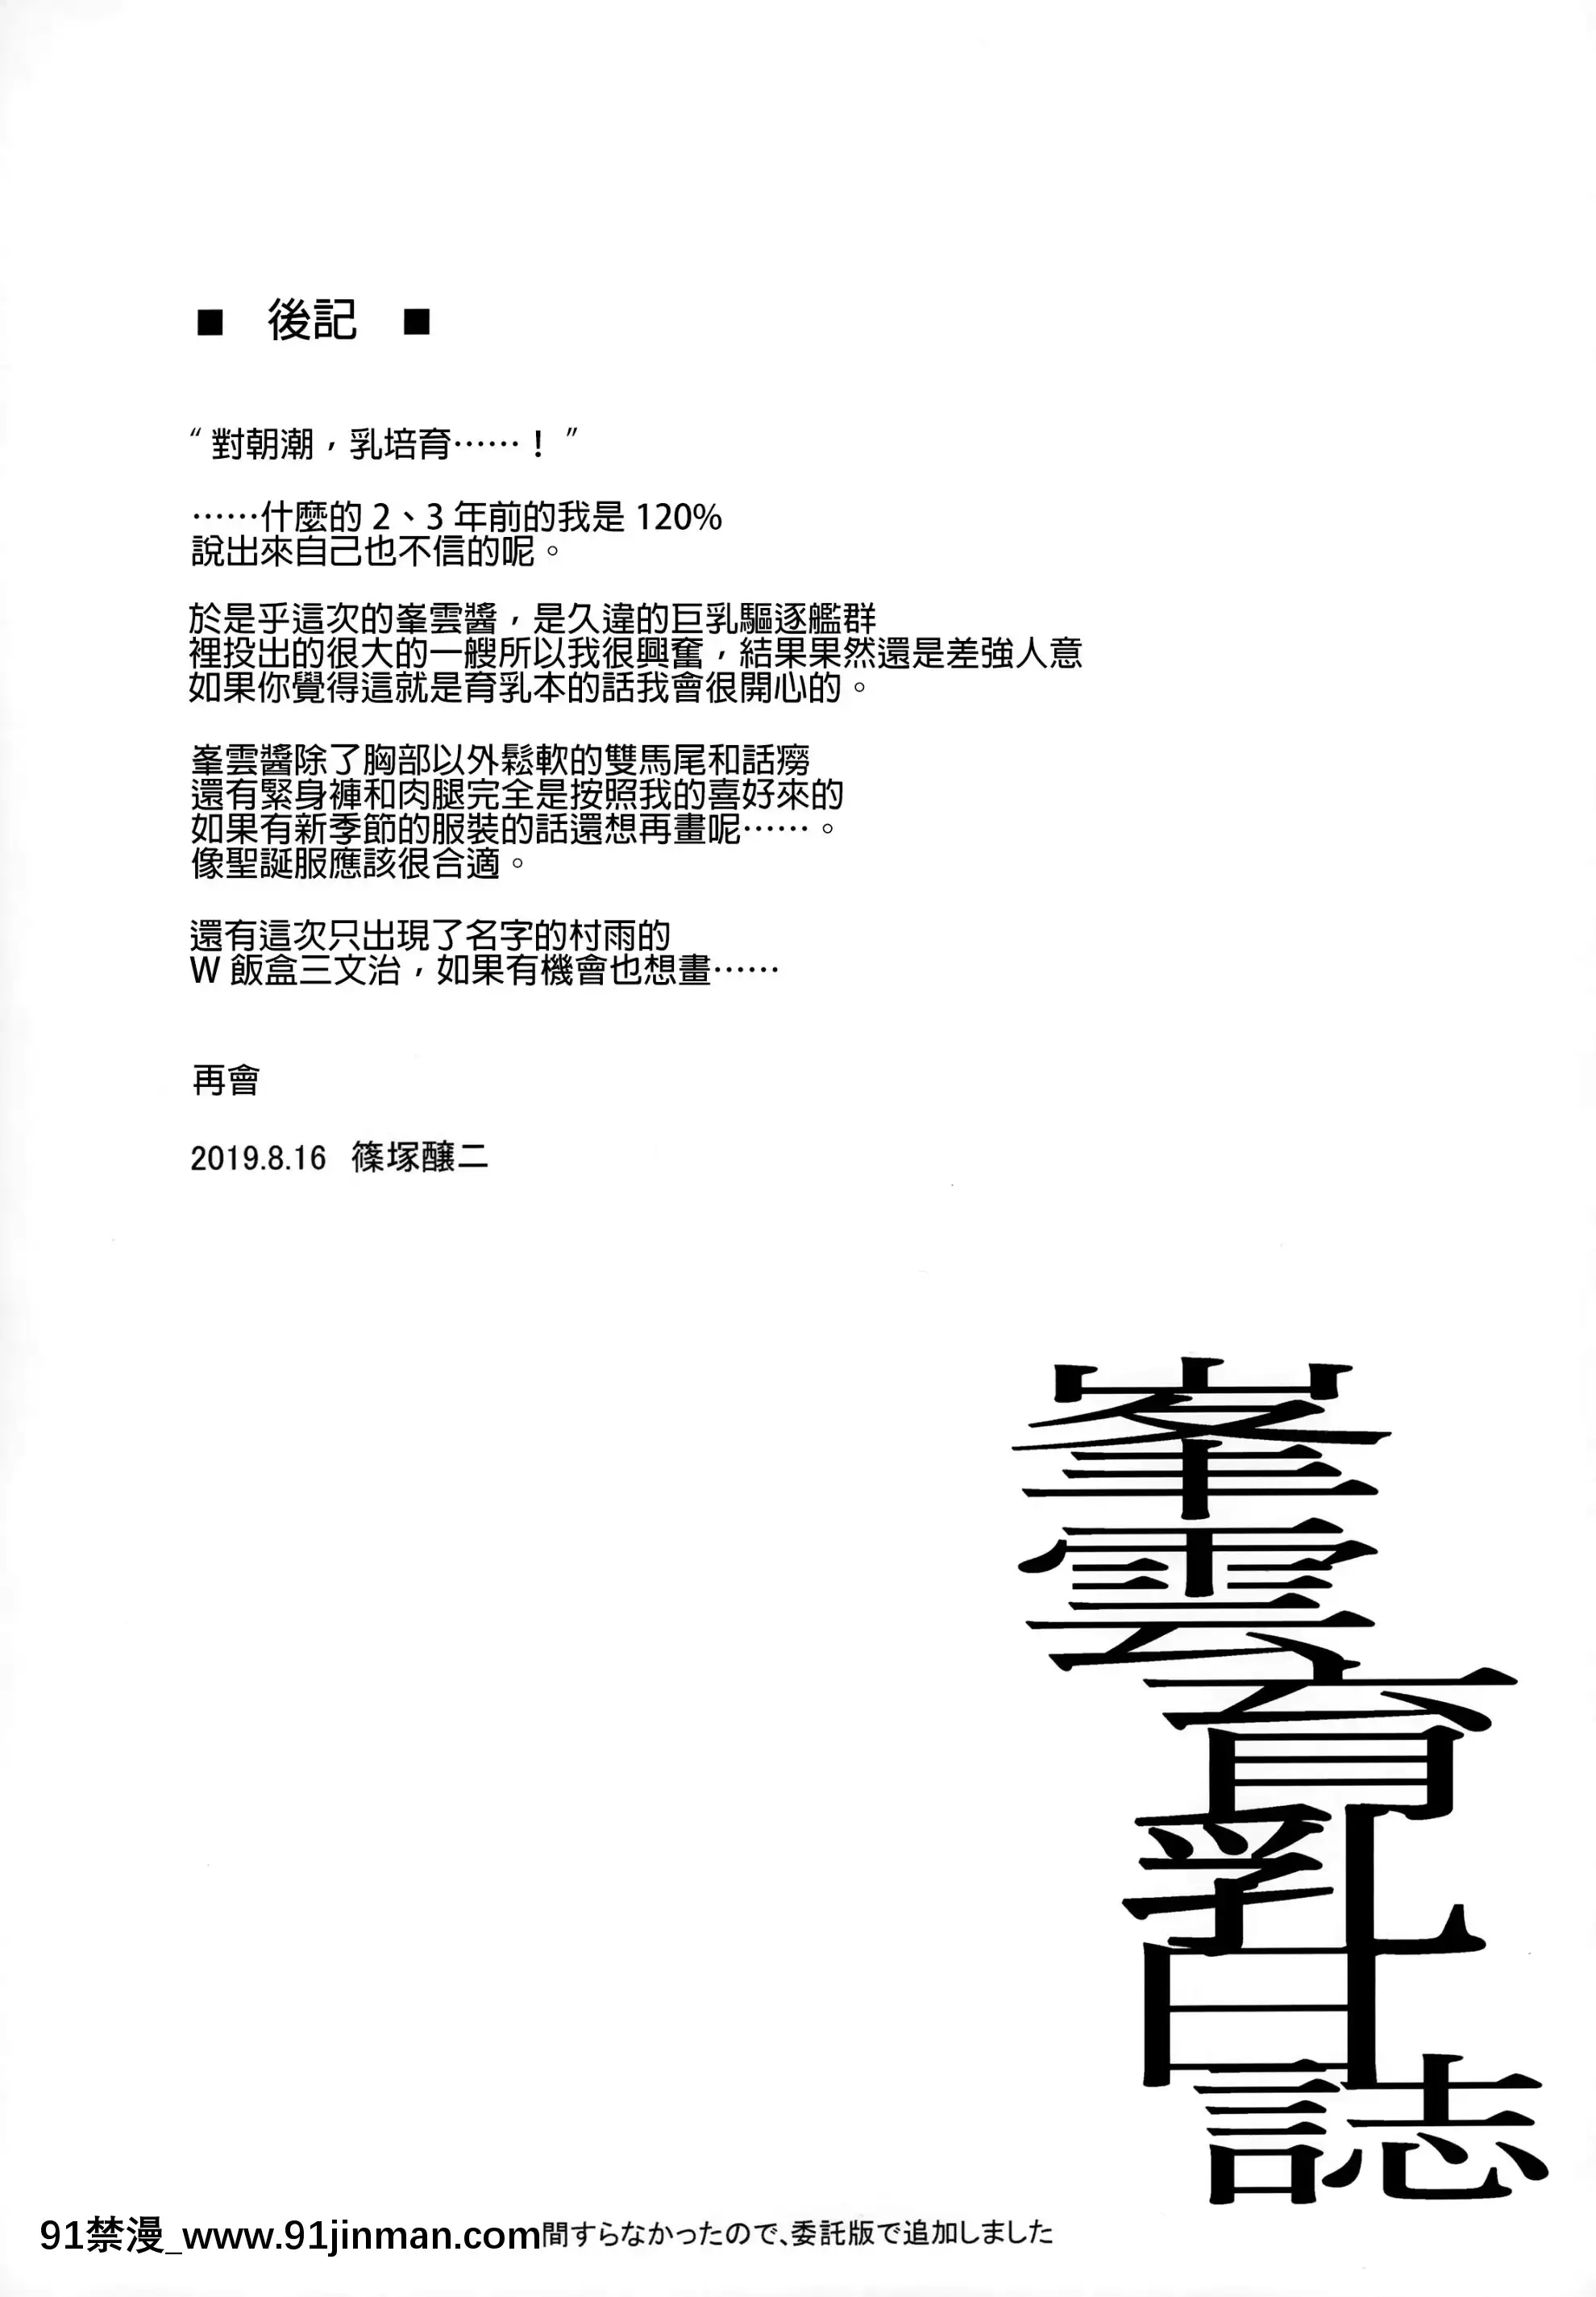 (96) [Chang Shi Chang (Shun zhong Brewer II)] Fengyun Milk Culctiation Log (Fleet 